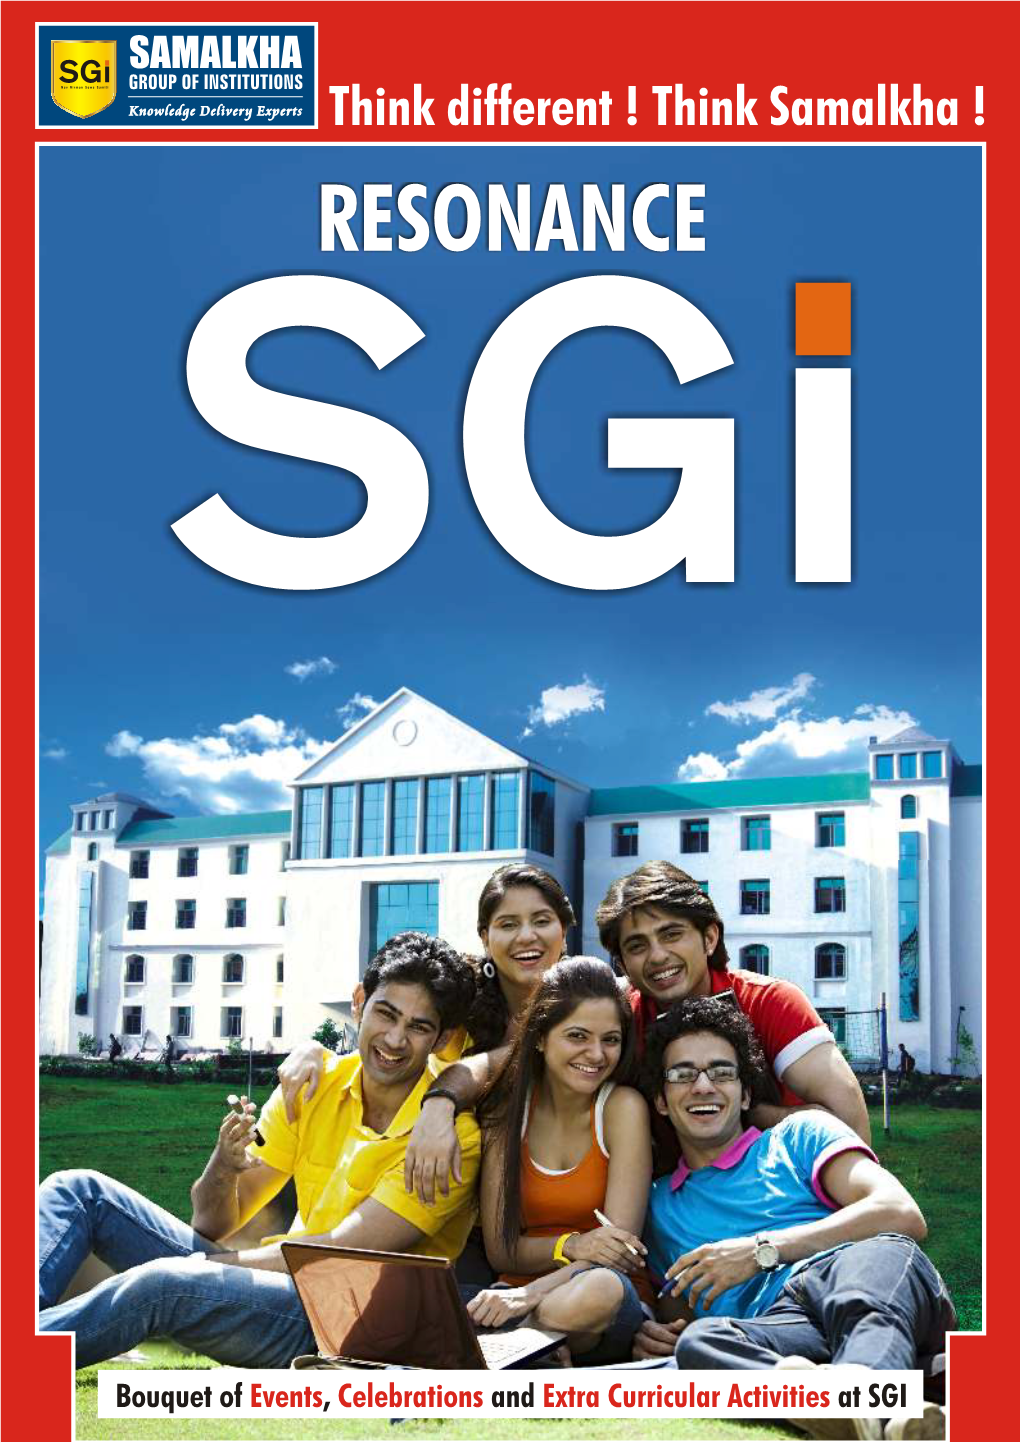 SGI Newsletter Magazine Jan'11.Cdr